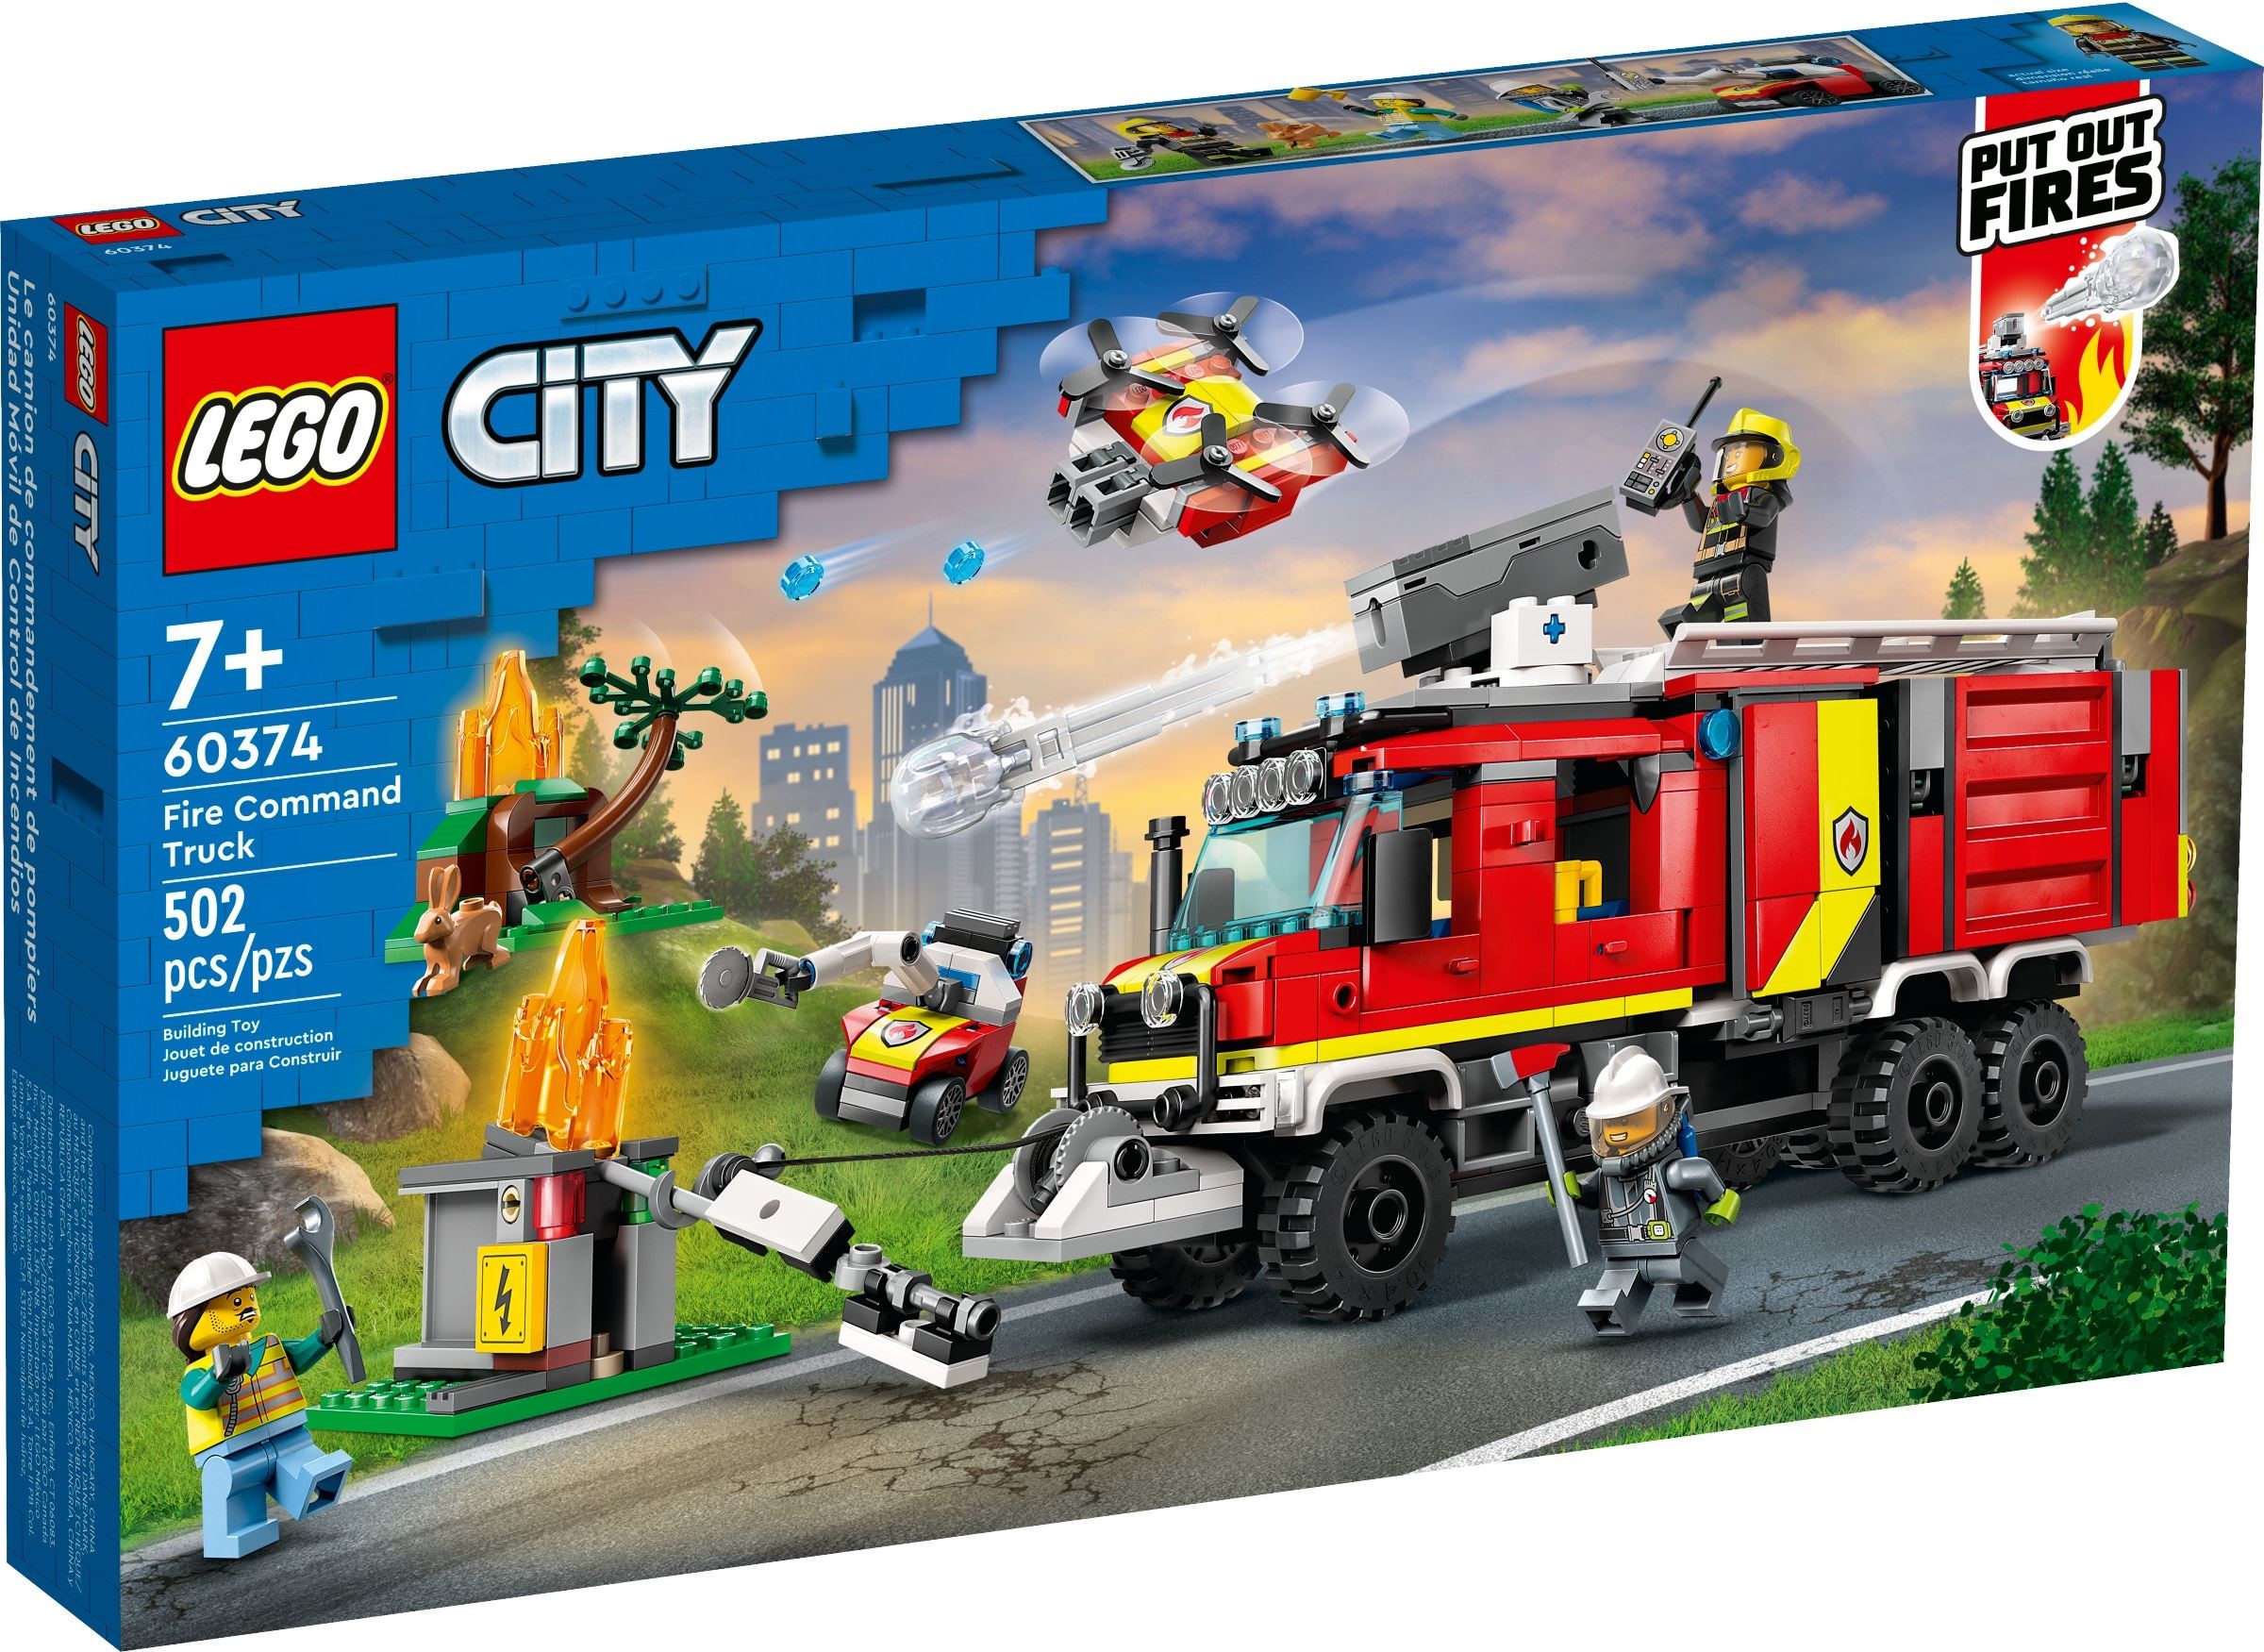 La caserne des pompiers 60320 | City | Boutique LEGO® officielle FR